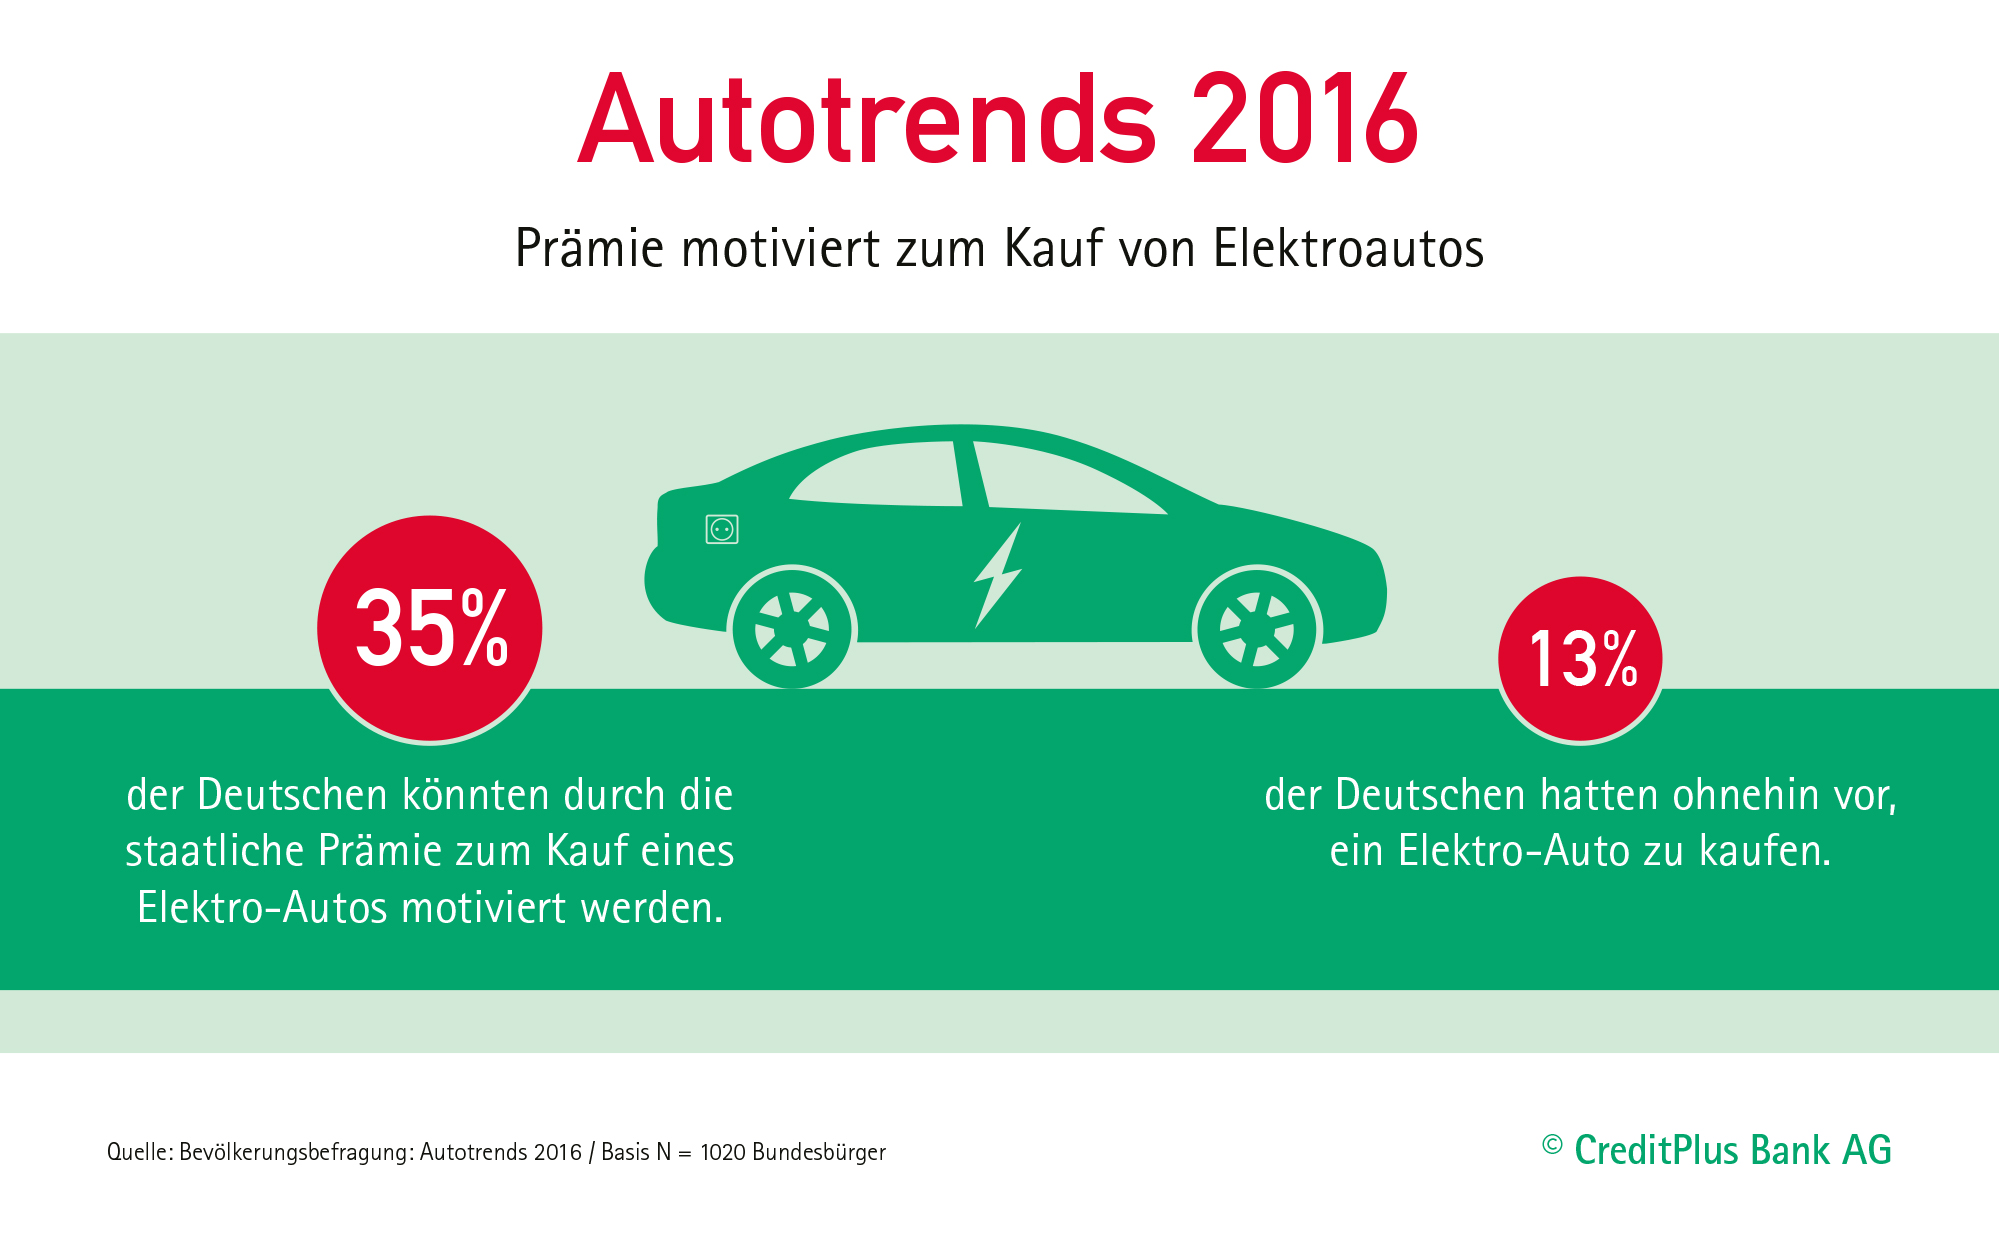 35 Prozent der Deutschen wird durch die Kaufförderung zum Kauf eines Elektroautos animiert. Bildquelle: Credit Plus Bank